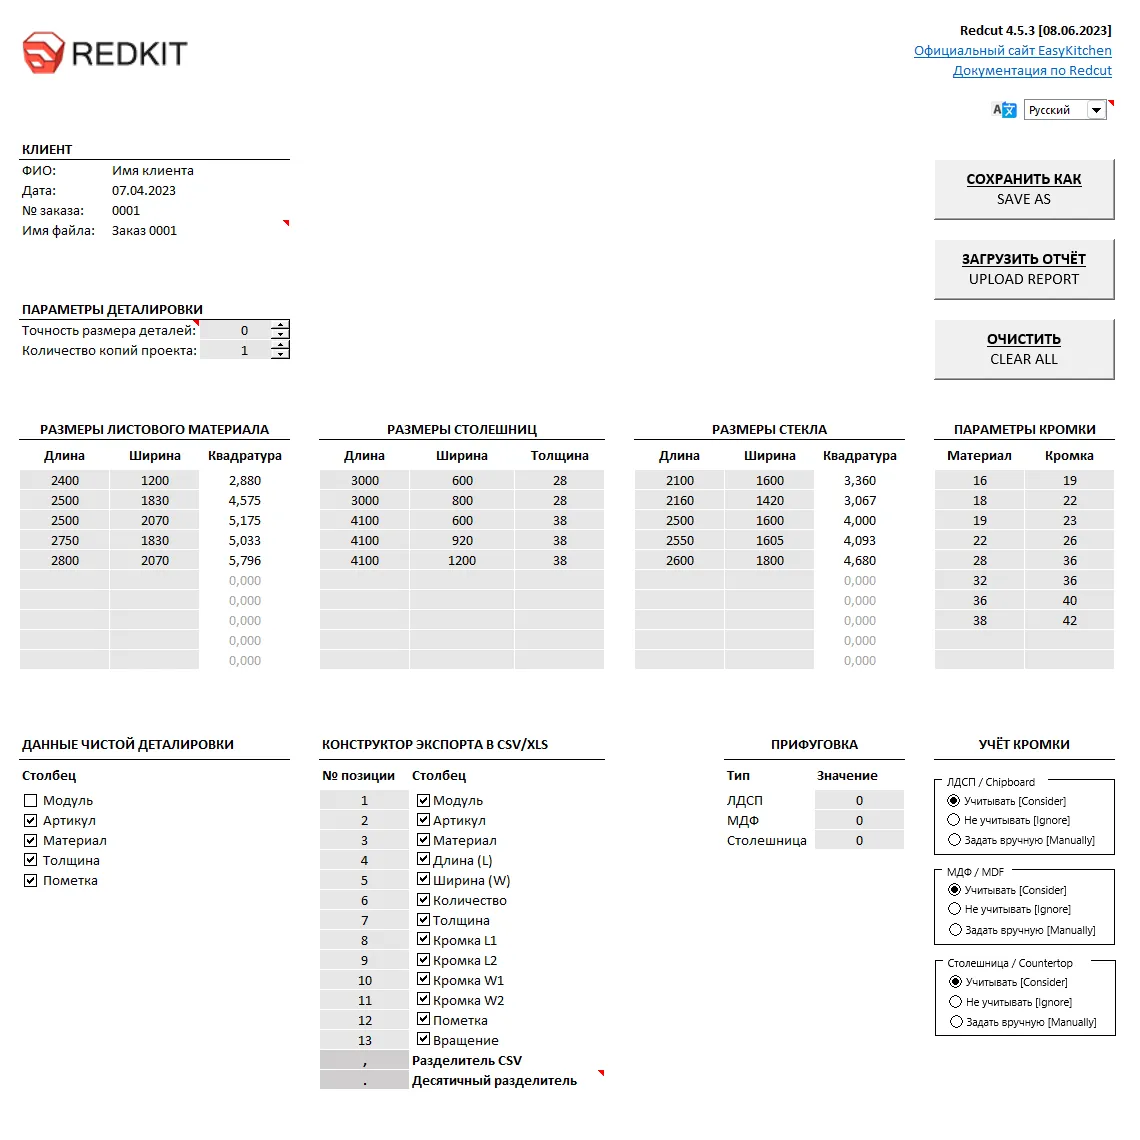 Download Redcut Report Processor